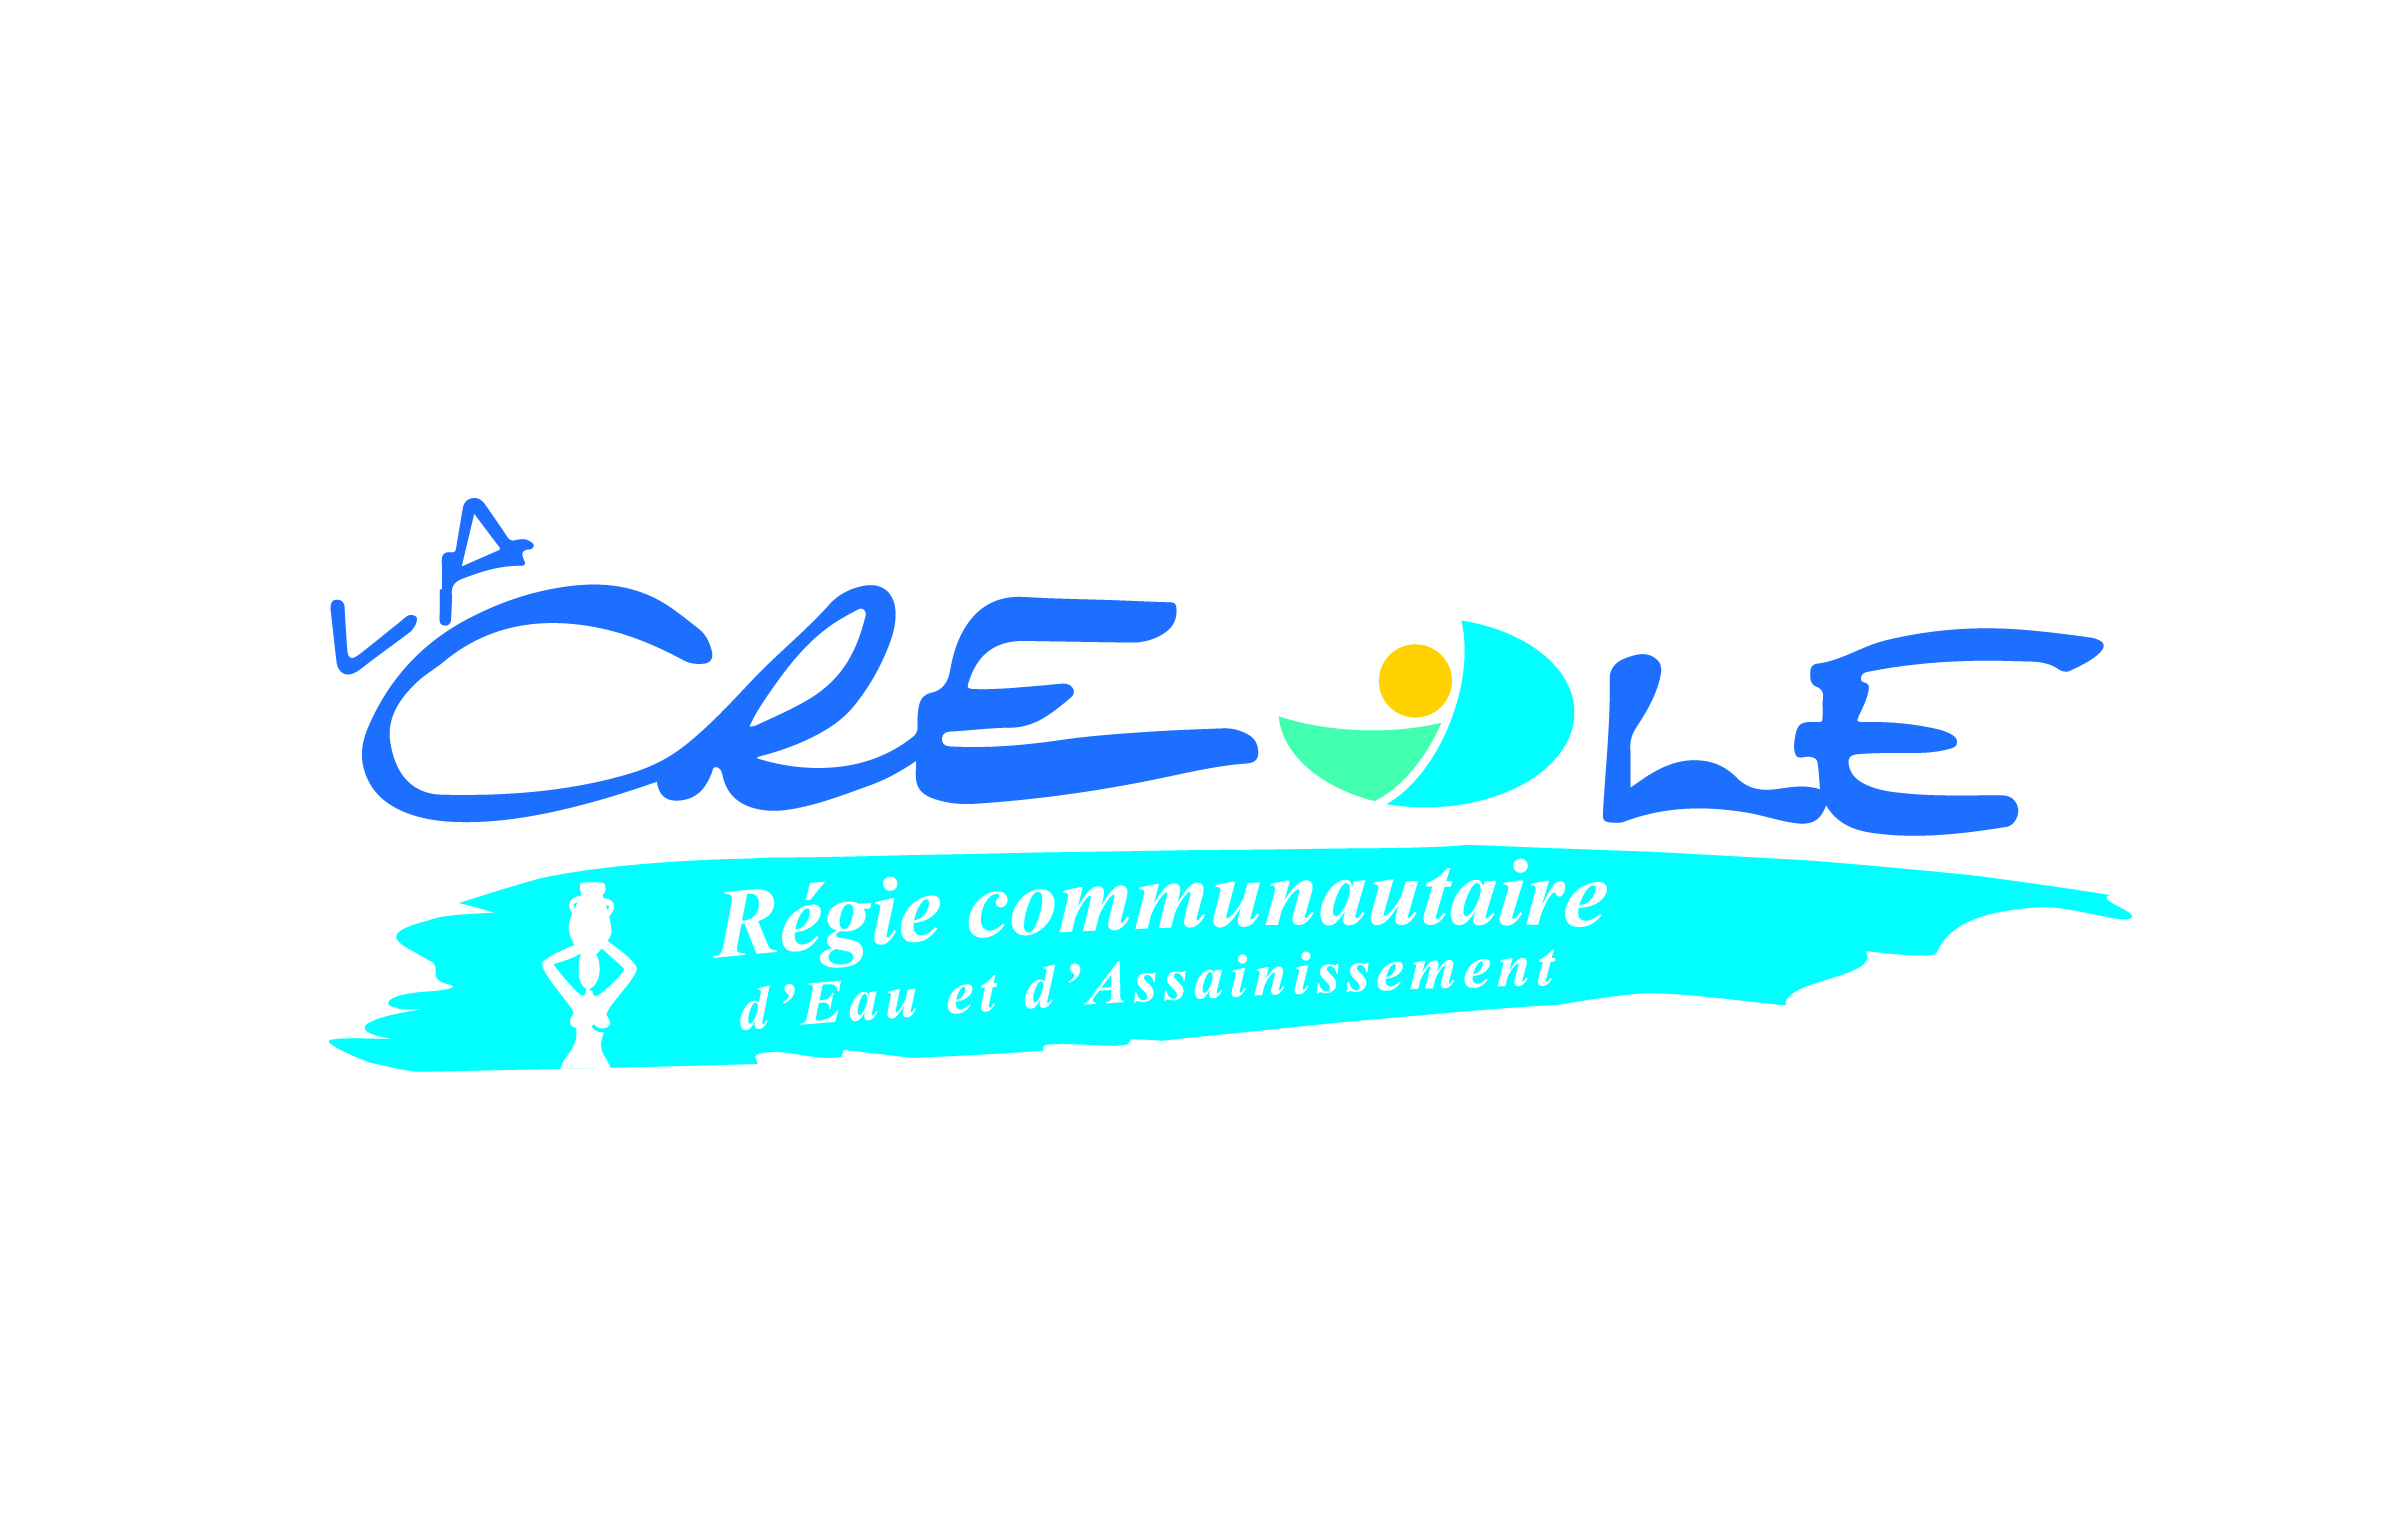 C:\Users\omangata\Desktop\La Créole-Logo-004_Créole.jpg